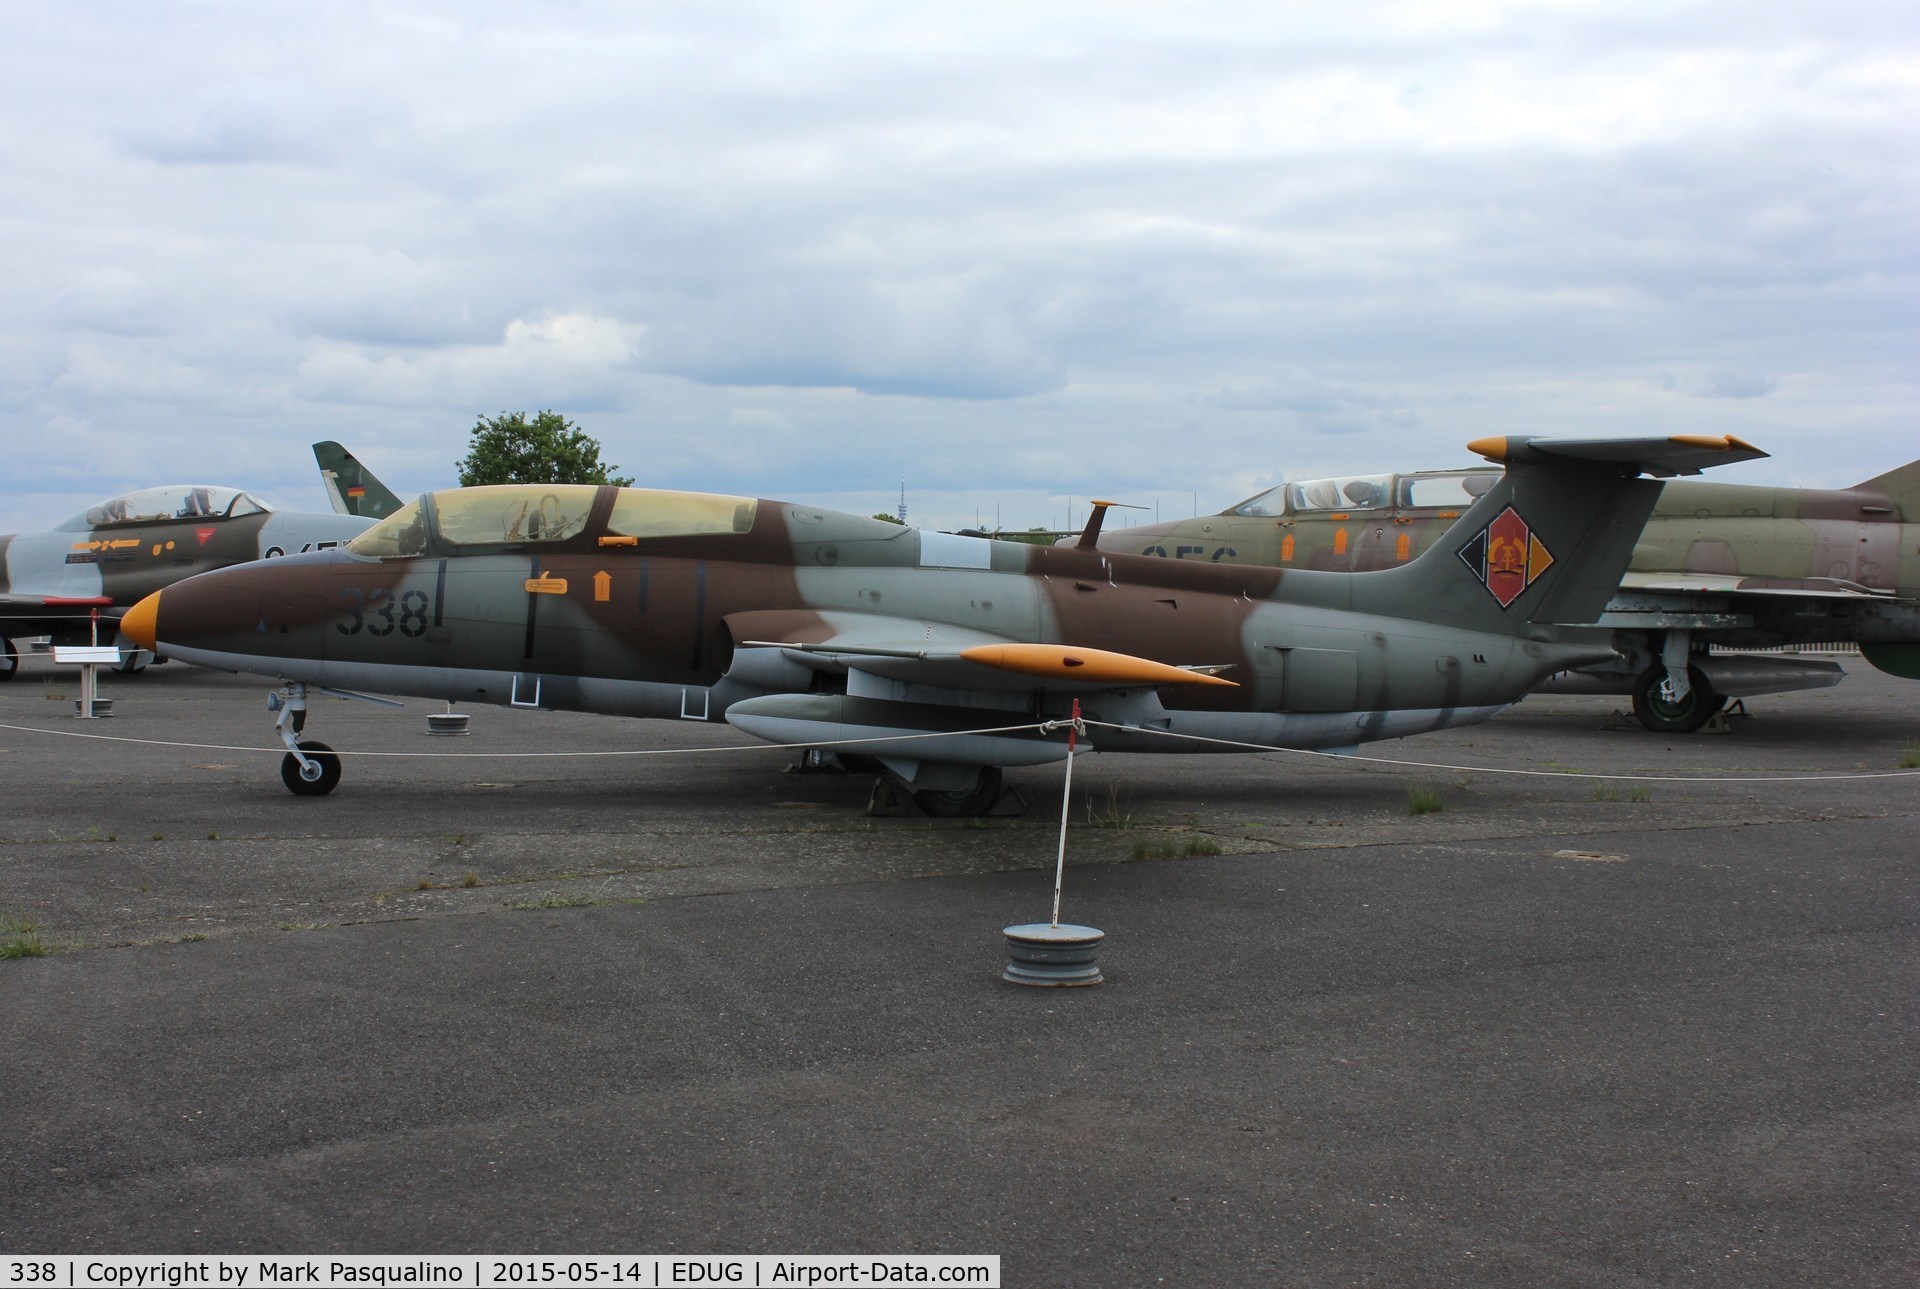 338, 1965 Aero L-29 Delfin C/N 591525, Aero L-29